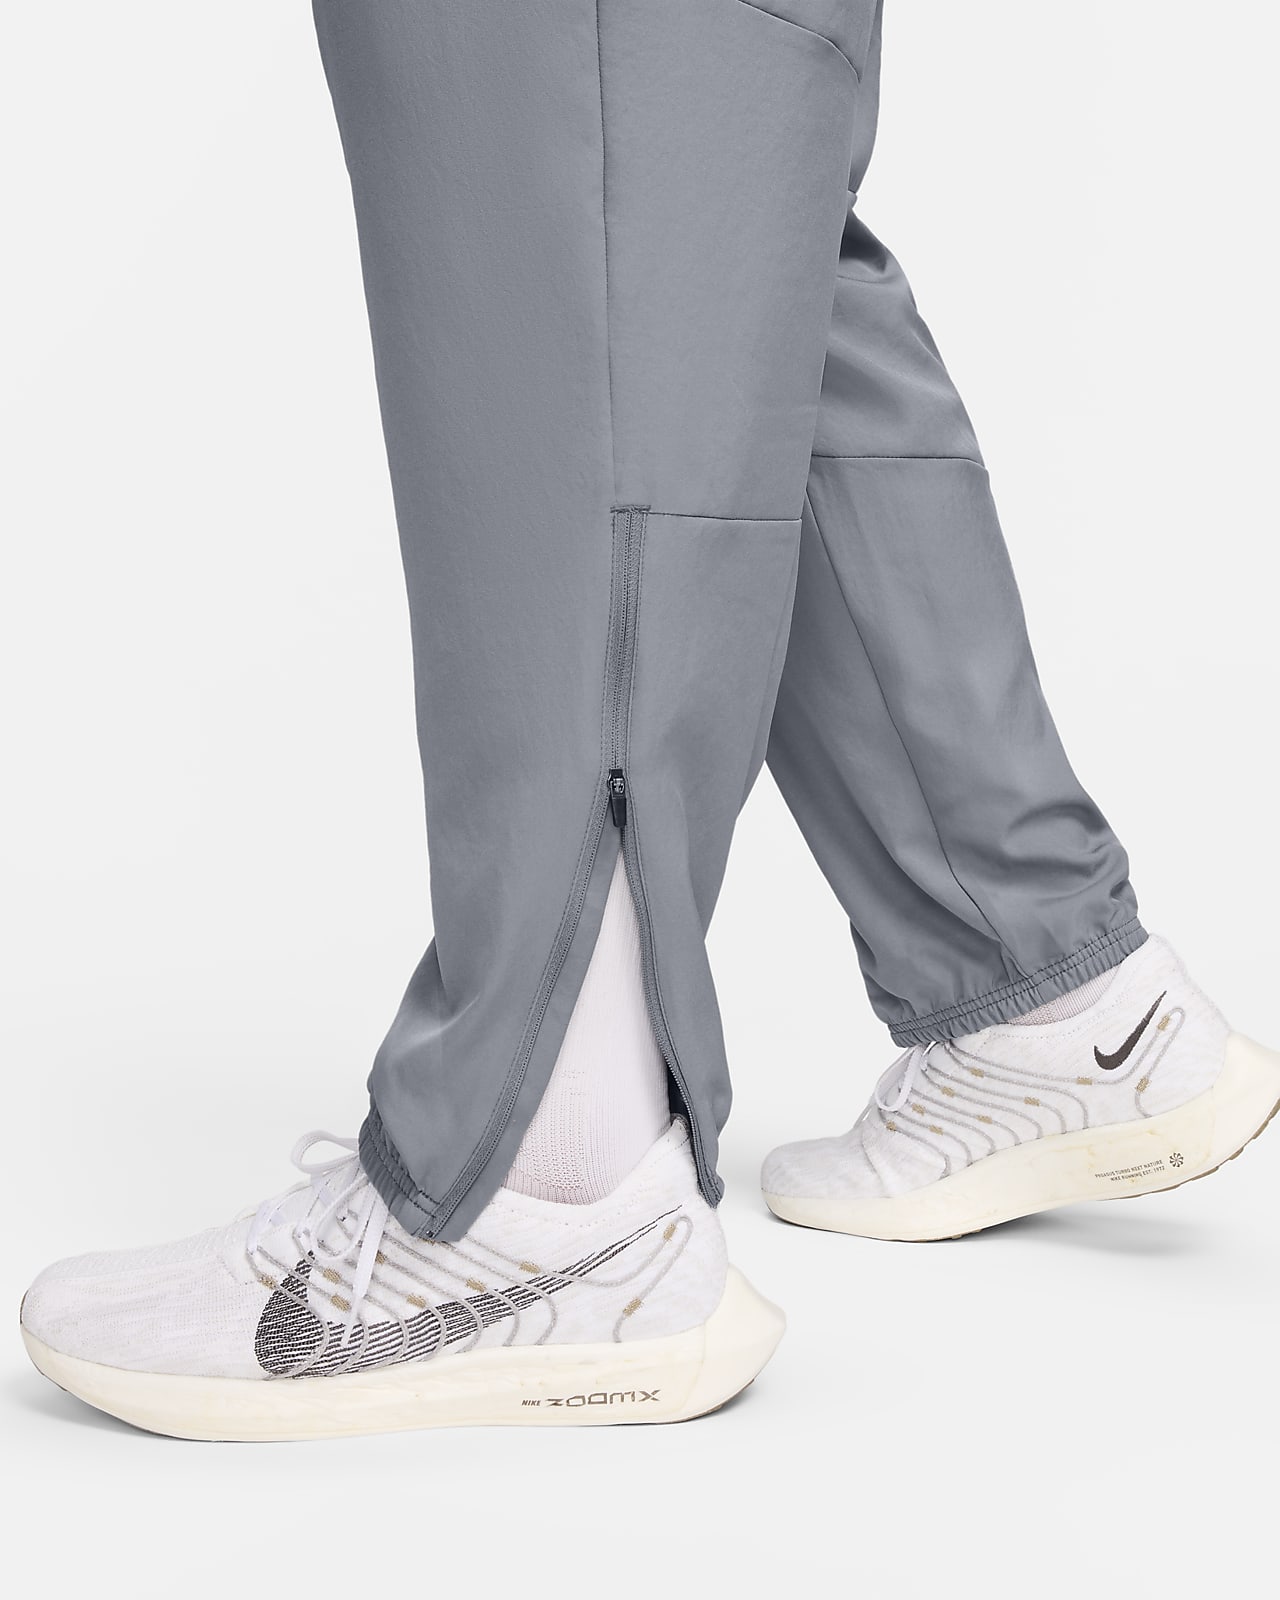 Rebajas en Nike: así son las zapatillas Challenger OG para hombre